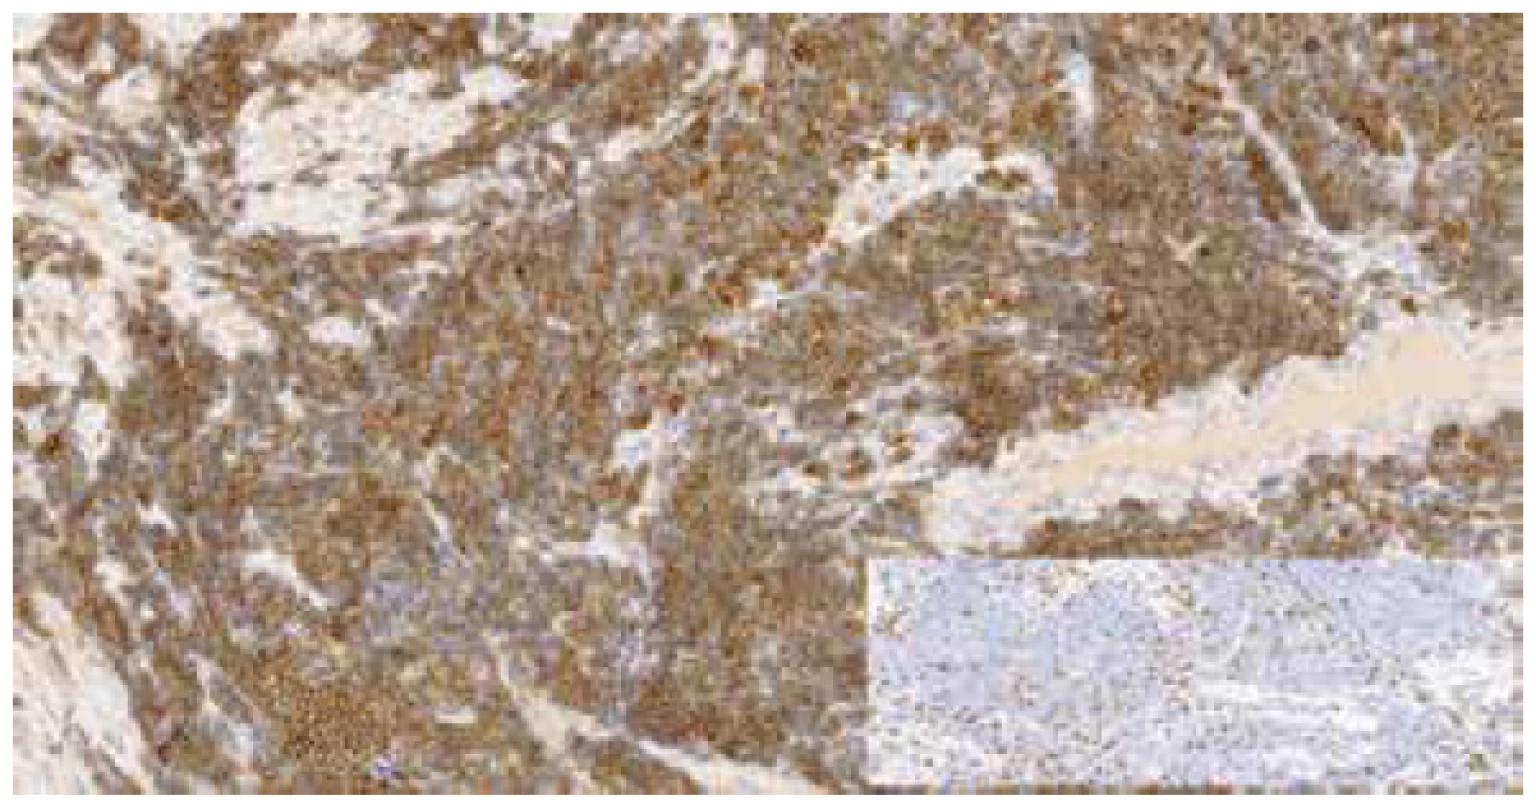 Imunohistochemický průkaz CD20 pozitivních buněk MCL, v pravém
dolním rohu vložen obrázek imunohistochemického průkazu CD3 – reaktivní
T-lymfocyty (zvětšeno 200x).